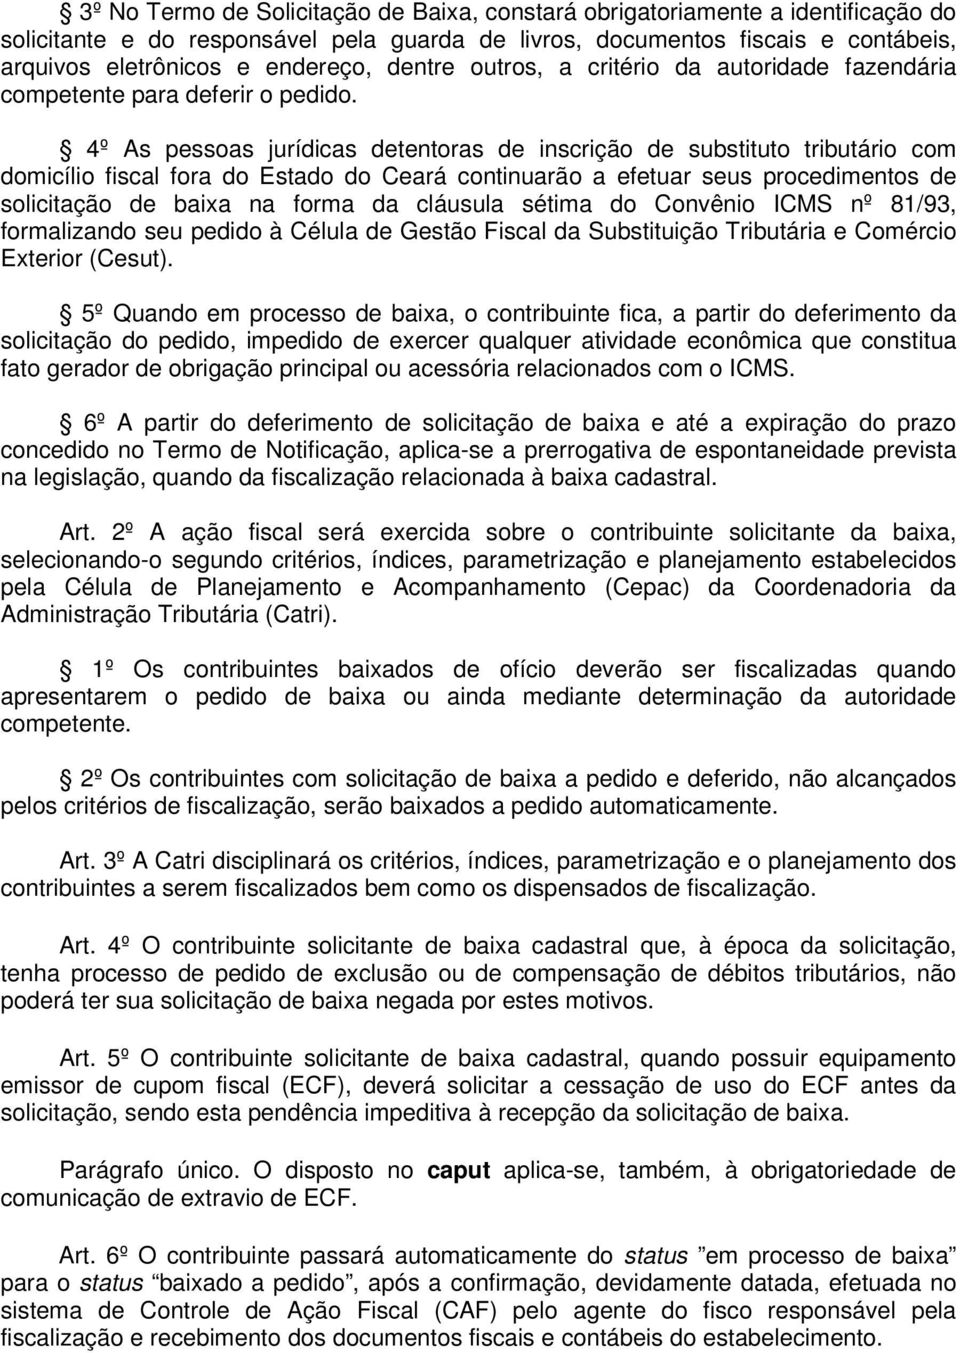 4º As pessoas jurídicas detentoras de inscrição de substituto tributário com domicílio fiscal fora do Estado do Ceará continuarão a efetuar seus procedimentos de solicitação de baixa na forma da